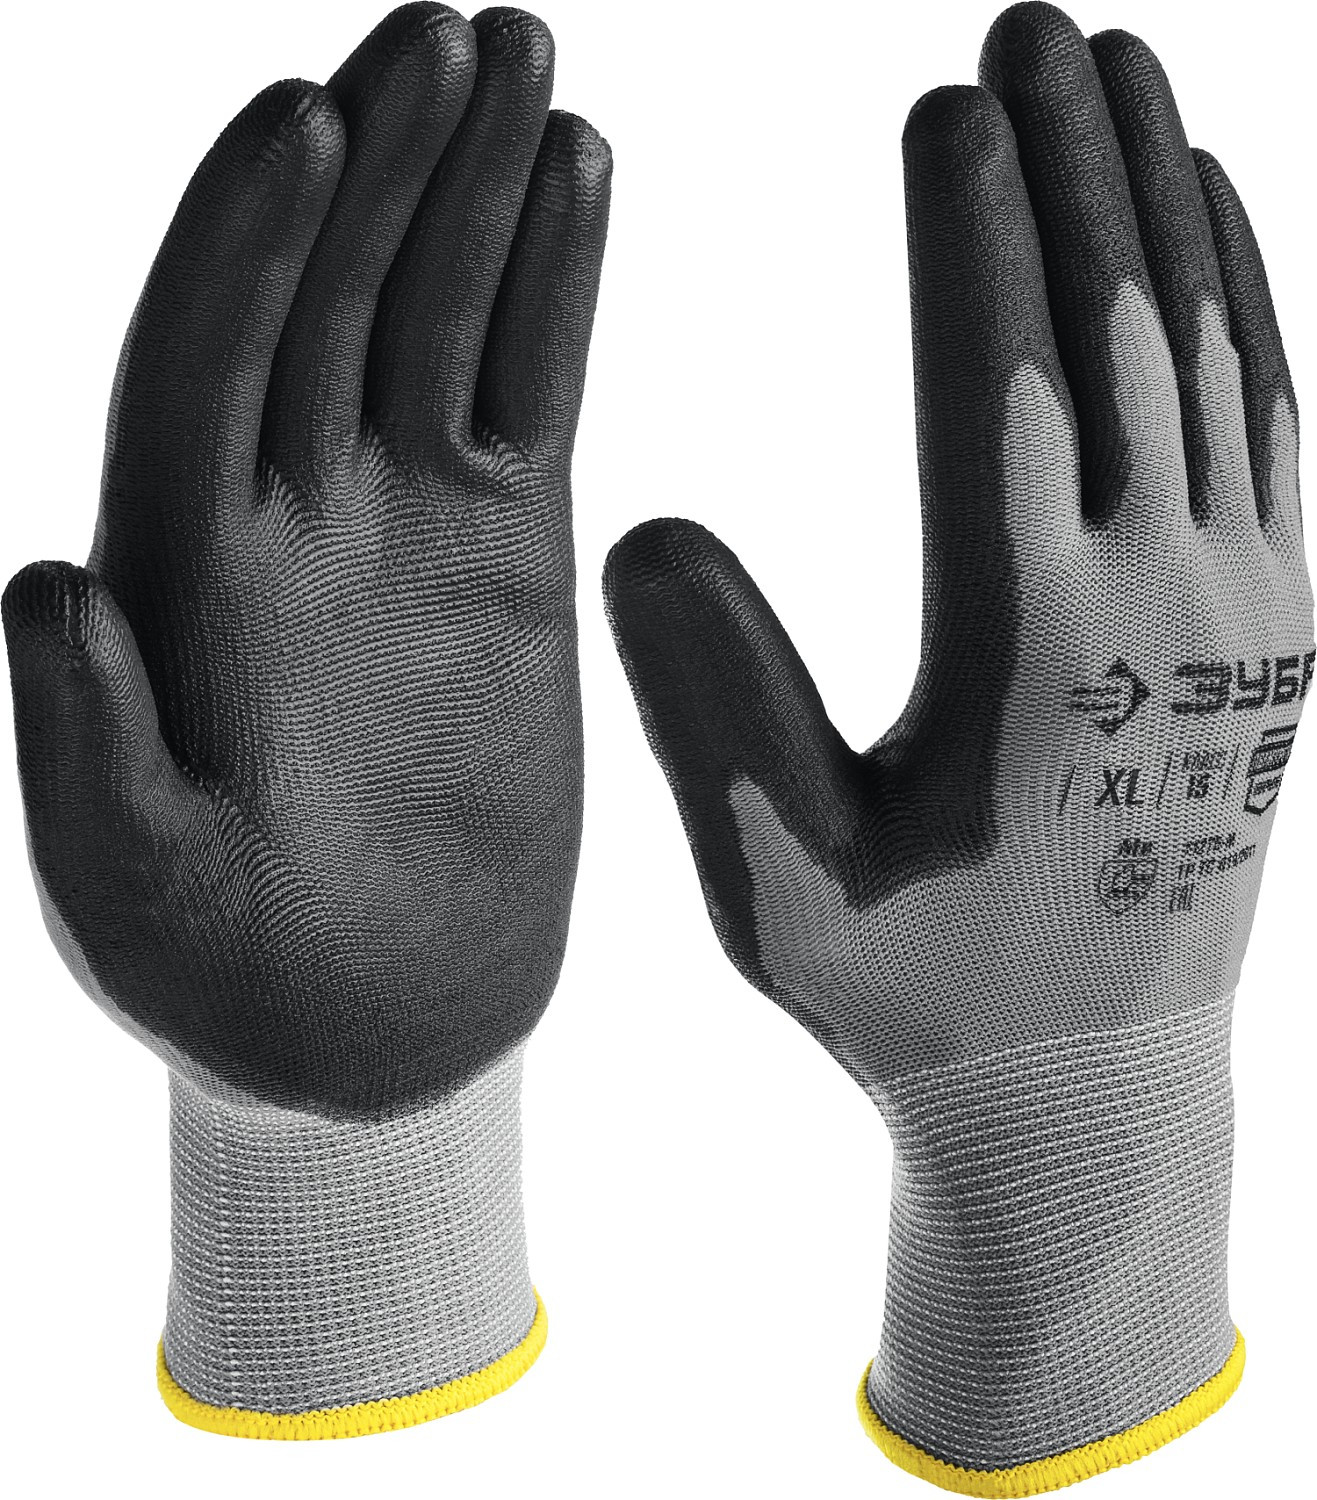 ЗУБР ТОЧНАЯ РАБОТА, XL (10), перчатки с полиуретановым покрытием, тонкие, комфортные, для точных работ, 15 класс, Профессионал (11275-XL)